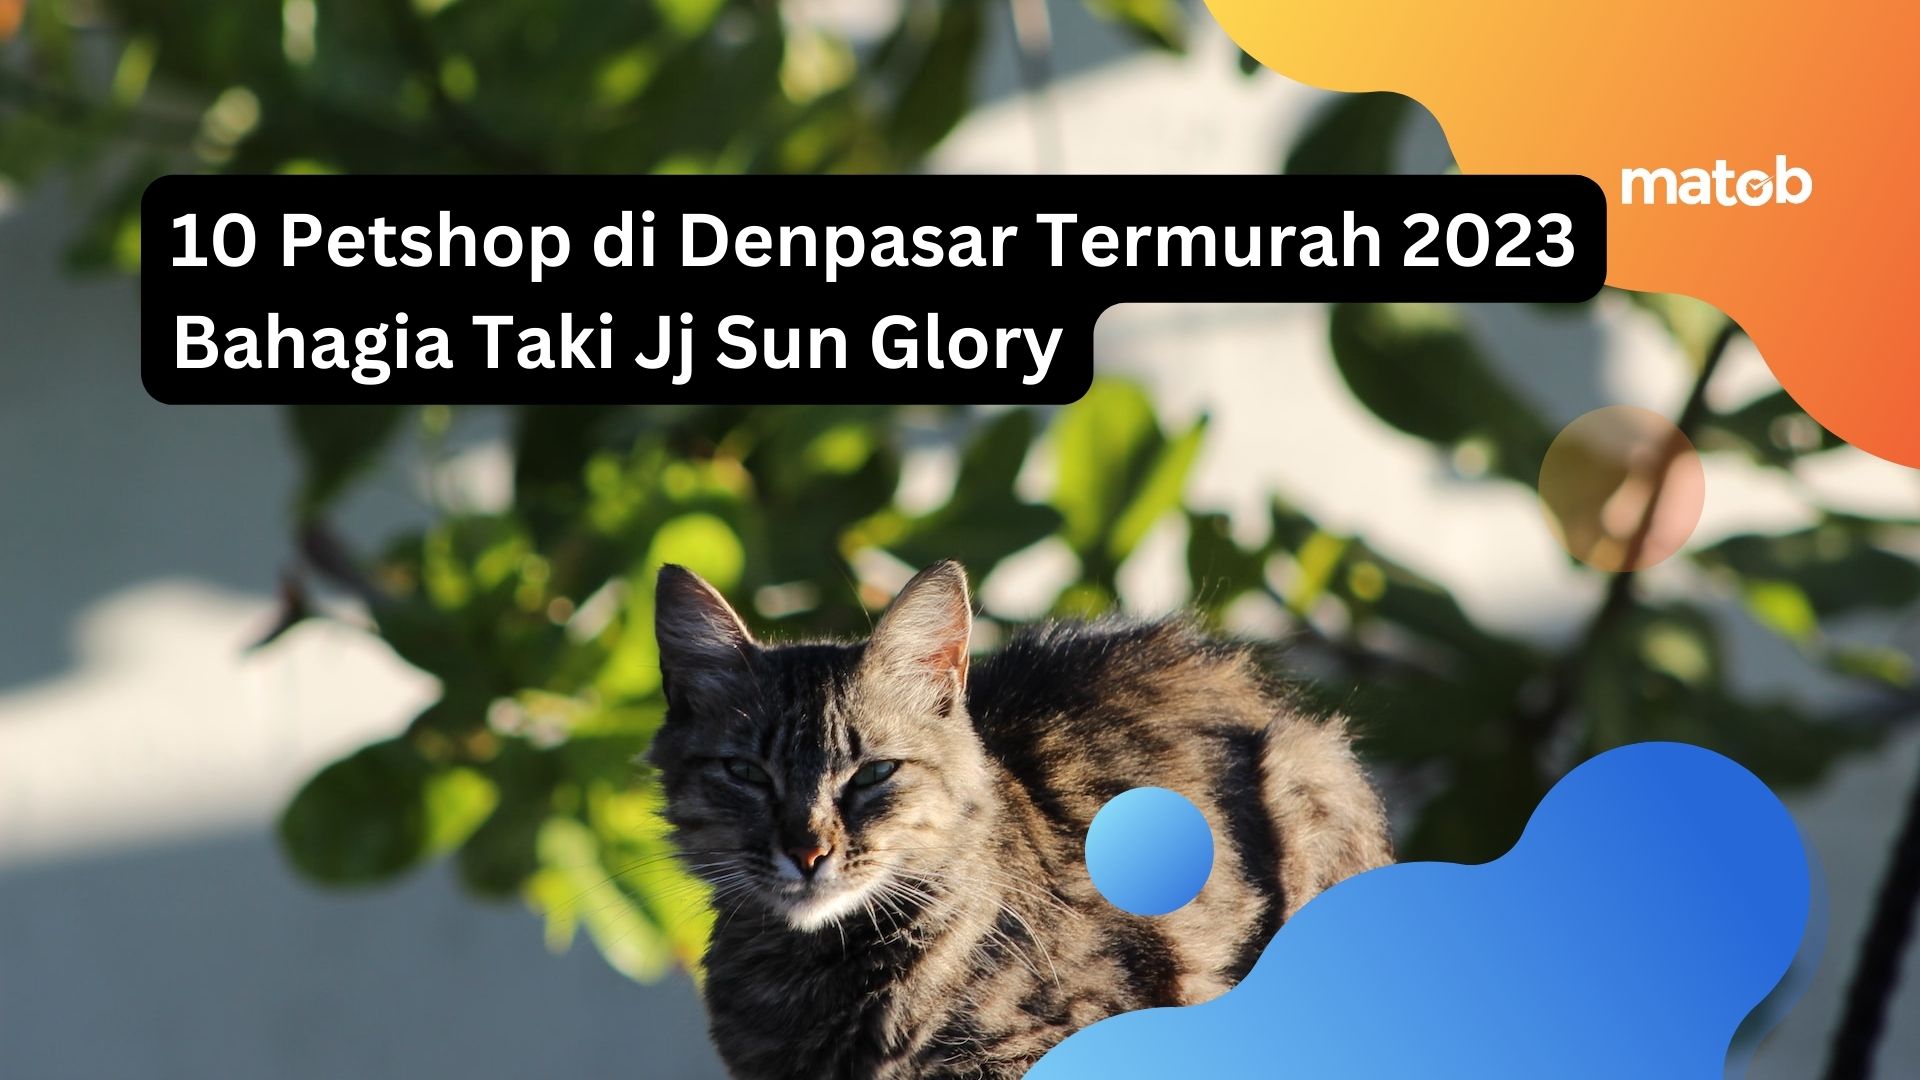 10 Petshop di Denpasar Termurah 2023 Bahagia Taki Jj Sun Glory